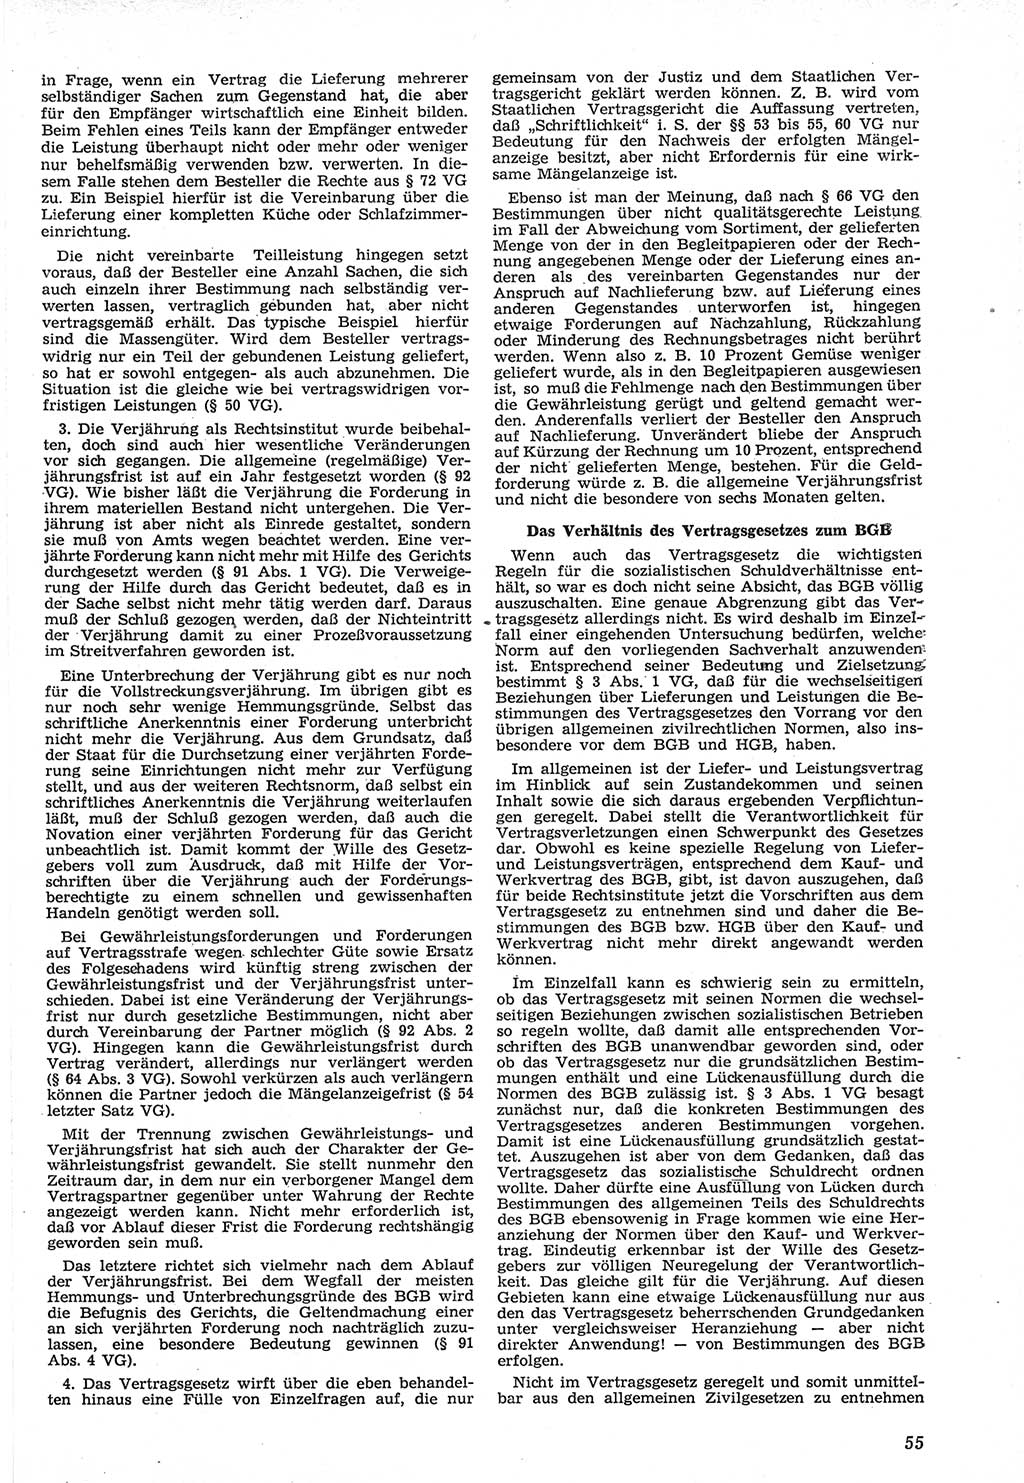 Neue Justiz (NJ), Zeitschrift für Recht und Rechtswissenschaft [Deutsche Demokratische Republik (DDR)], 12. Jahrgang 1958, Seite 55 (NJ DDR 1958, S. 55)